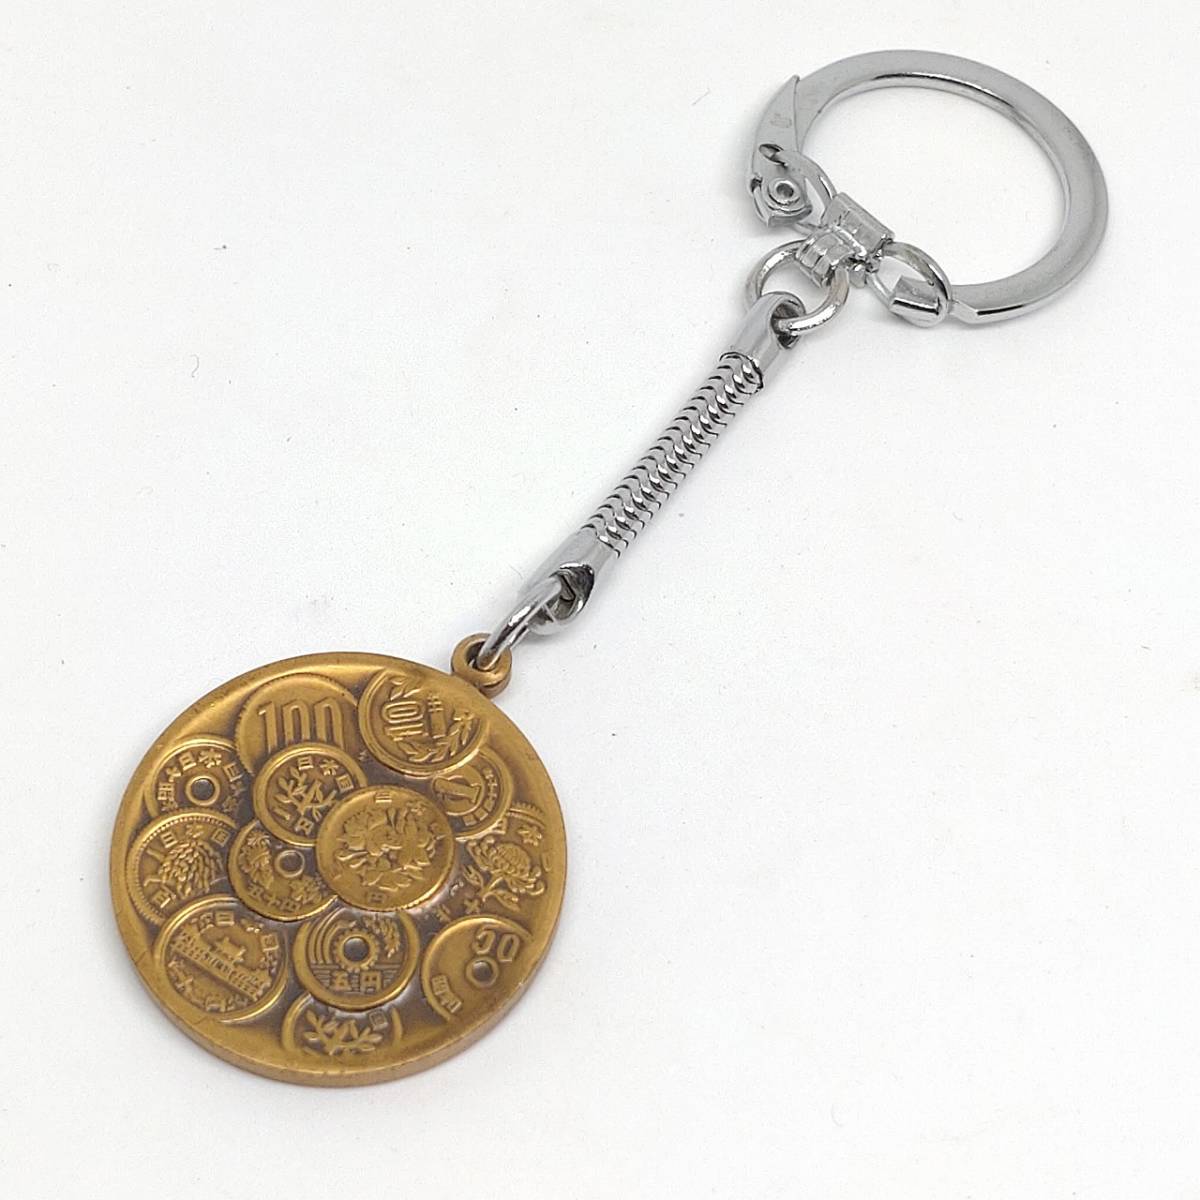 キーホルダー 硬貨の模様 造幣局 日本土産 【3999】の画像1